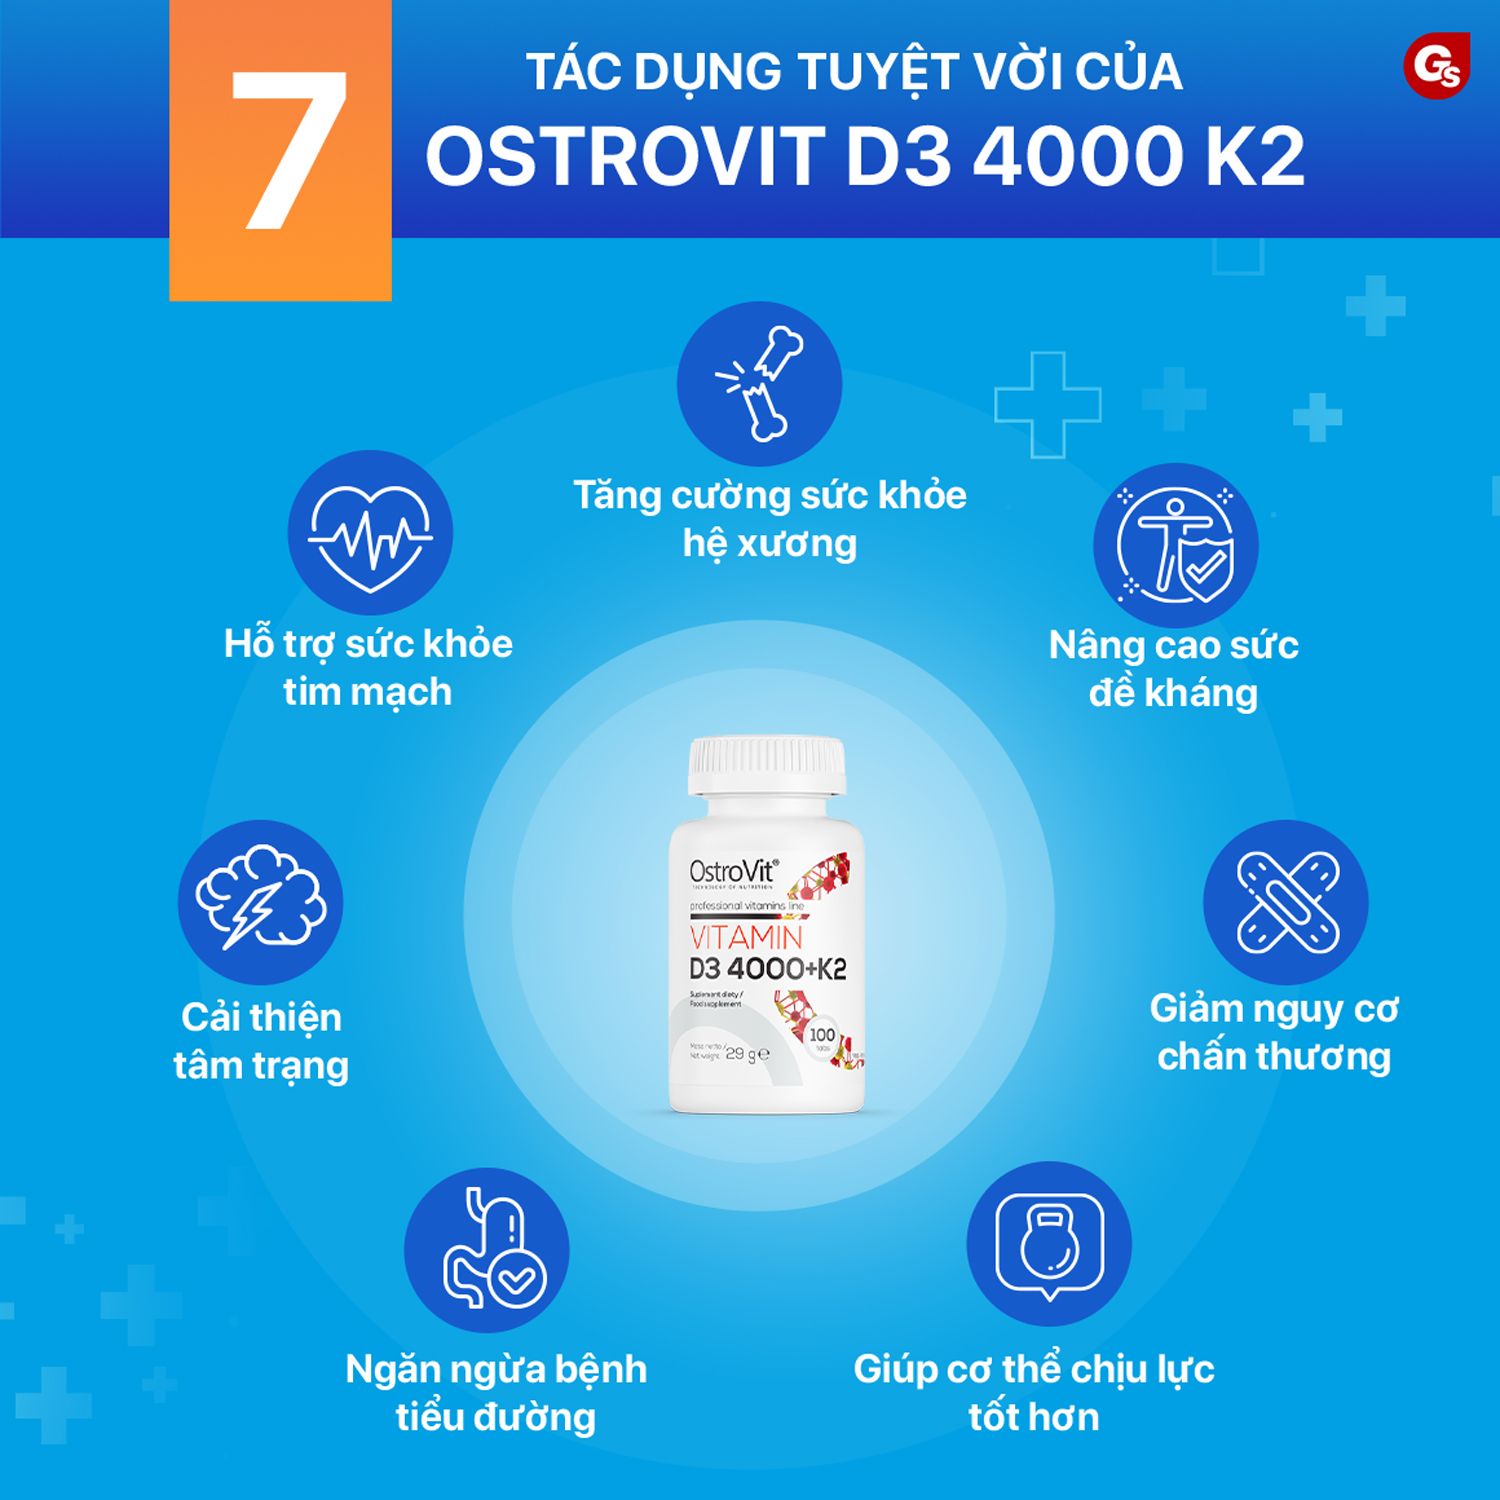 ostrovit-vitamin-d3-4000-k2-ho-tro-xuong-khop-gymstore-2